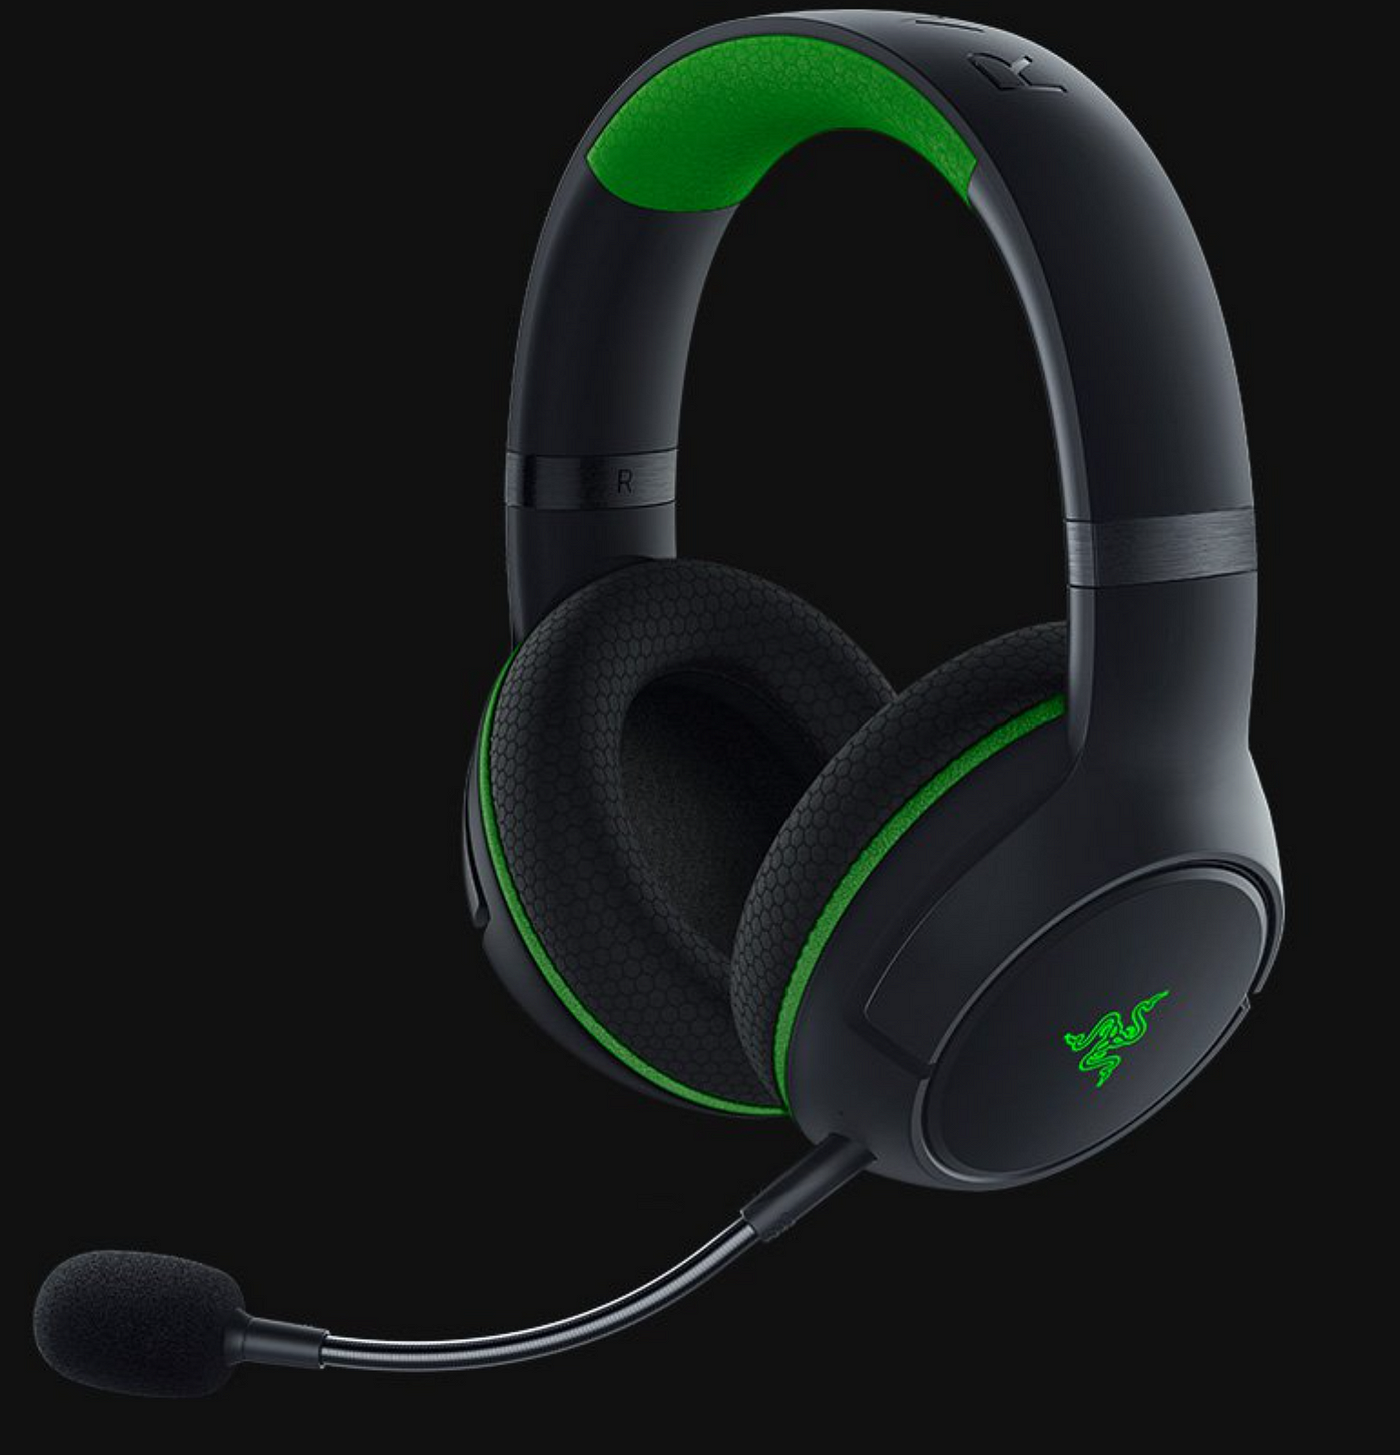 Razer Kaira Pro Wireless Xbox Gaming Headset Review | by Alex Rowe | Medium